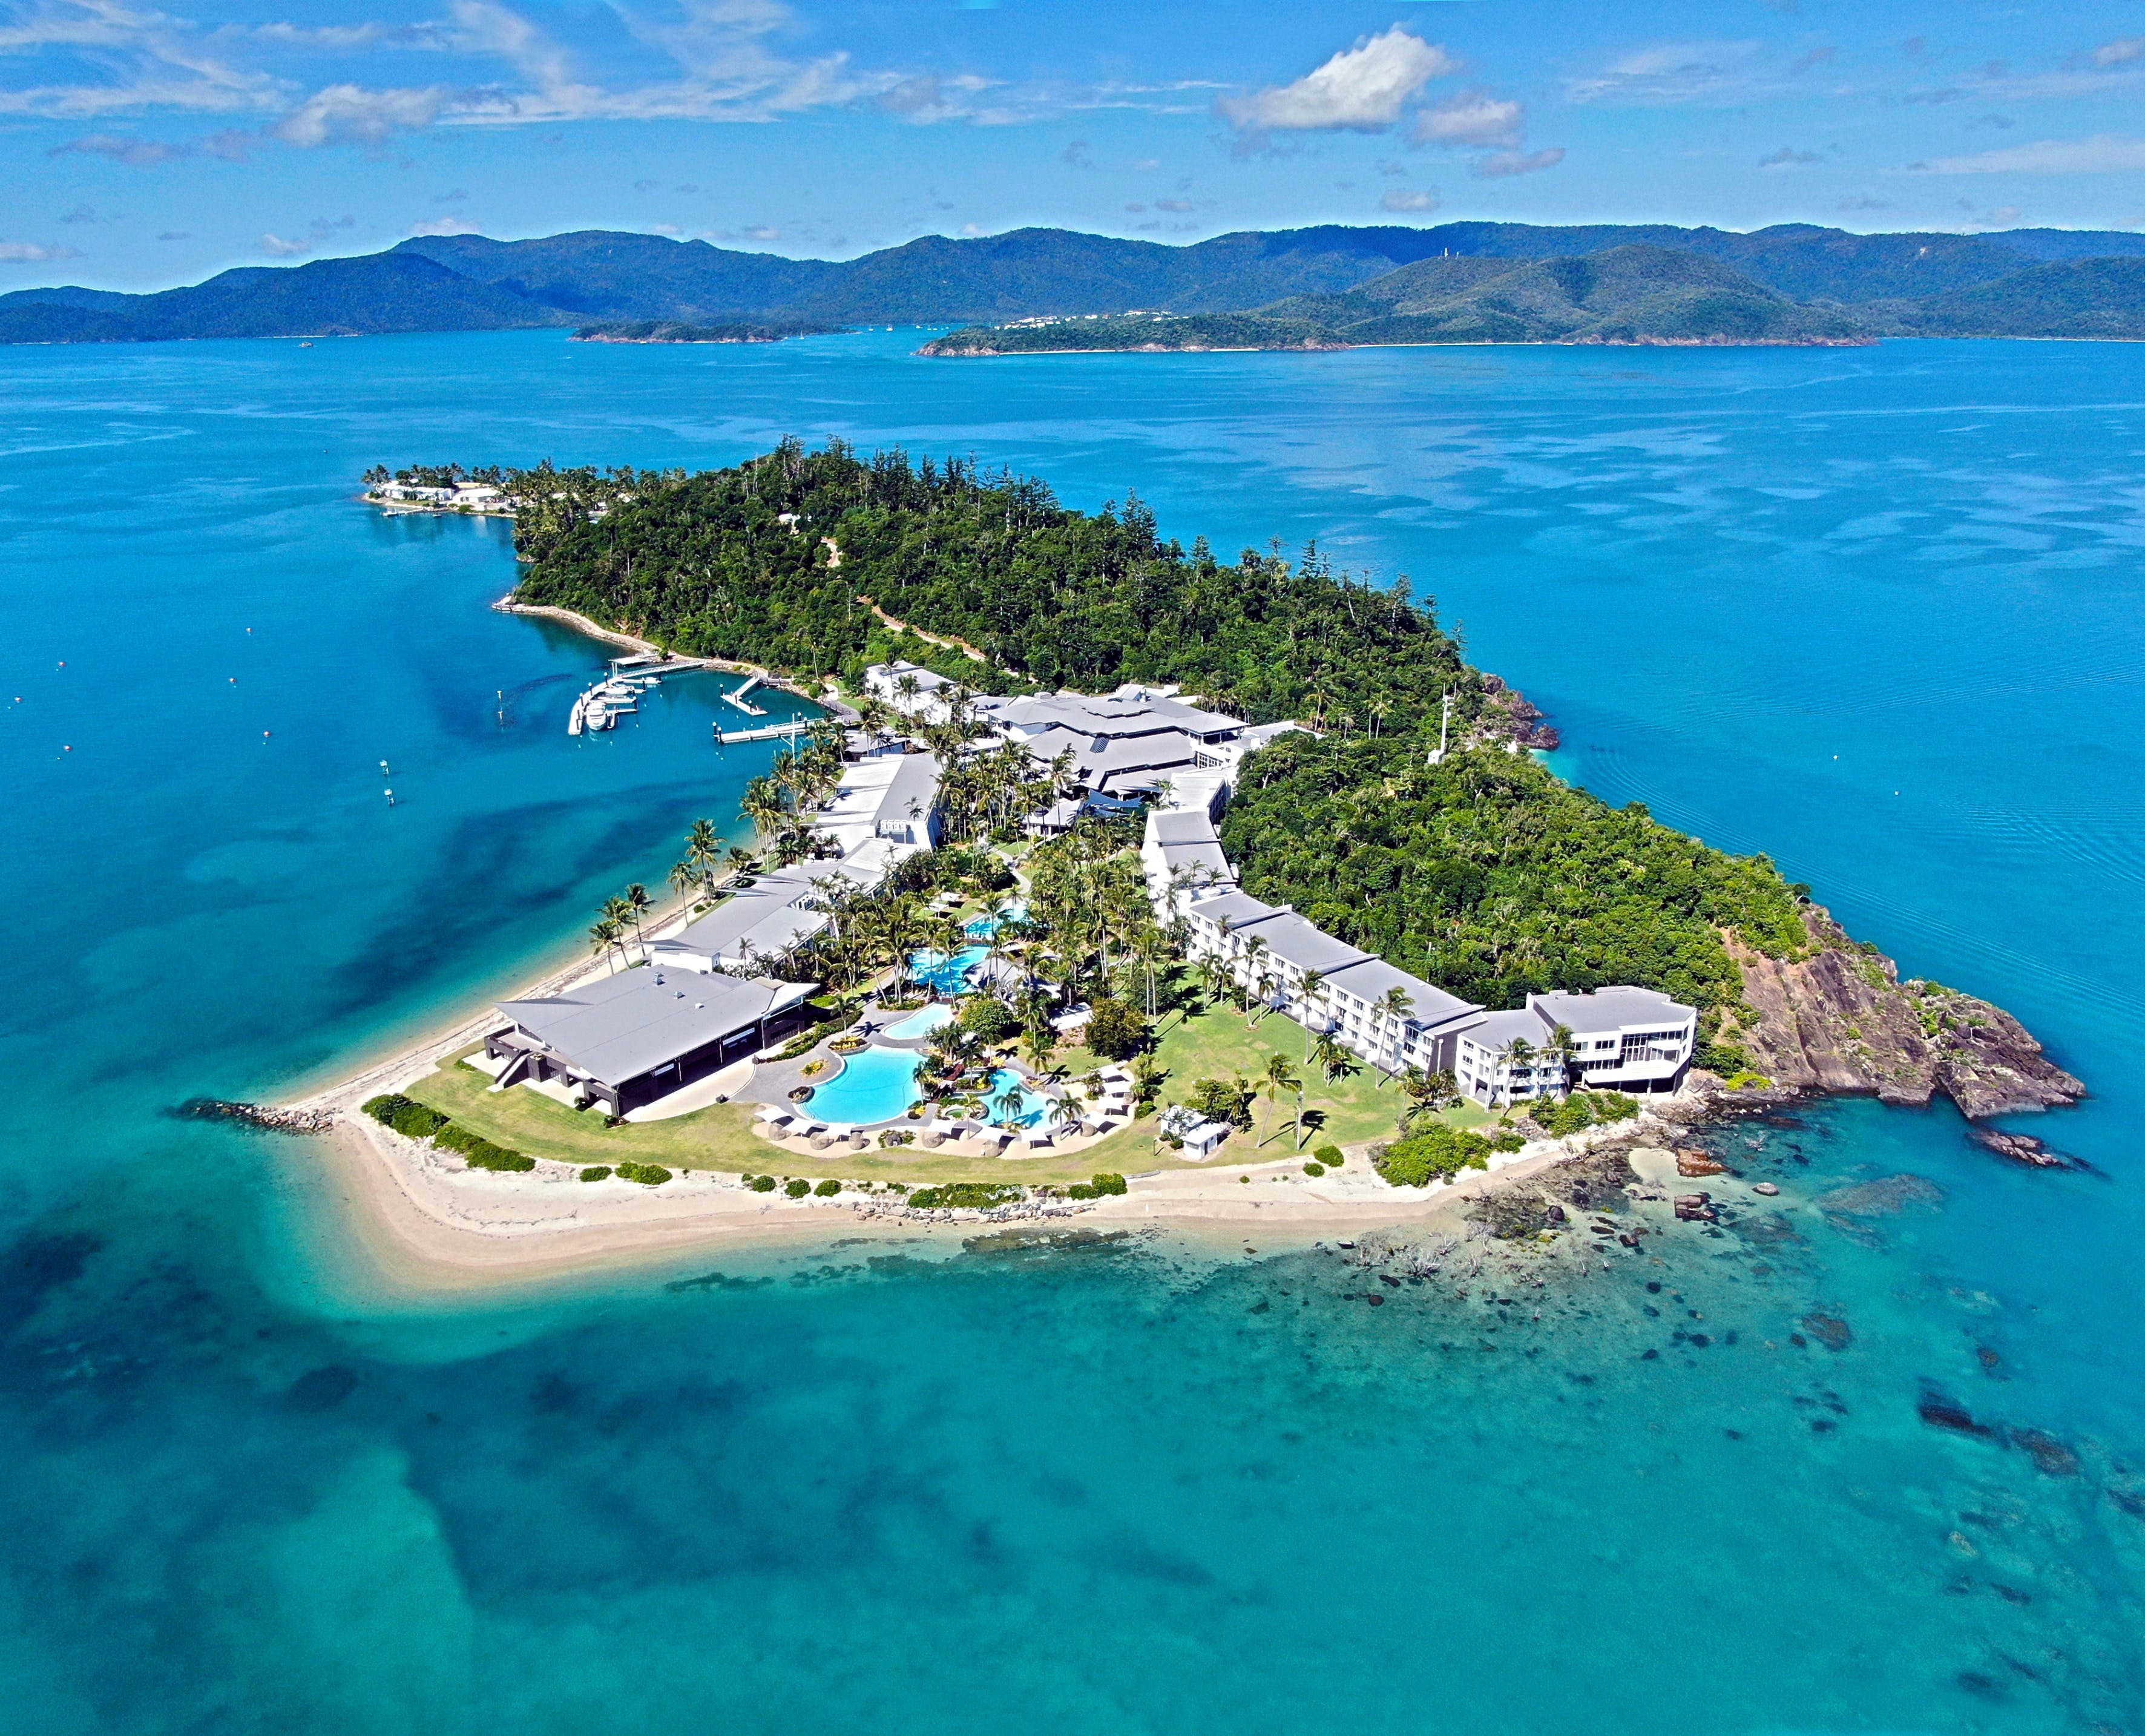 Daydream Island Resort and Living Reef - Yamba Accommodation